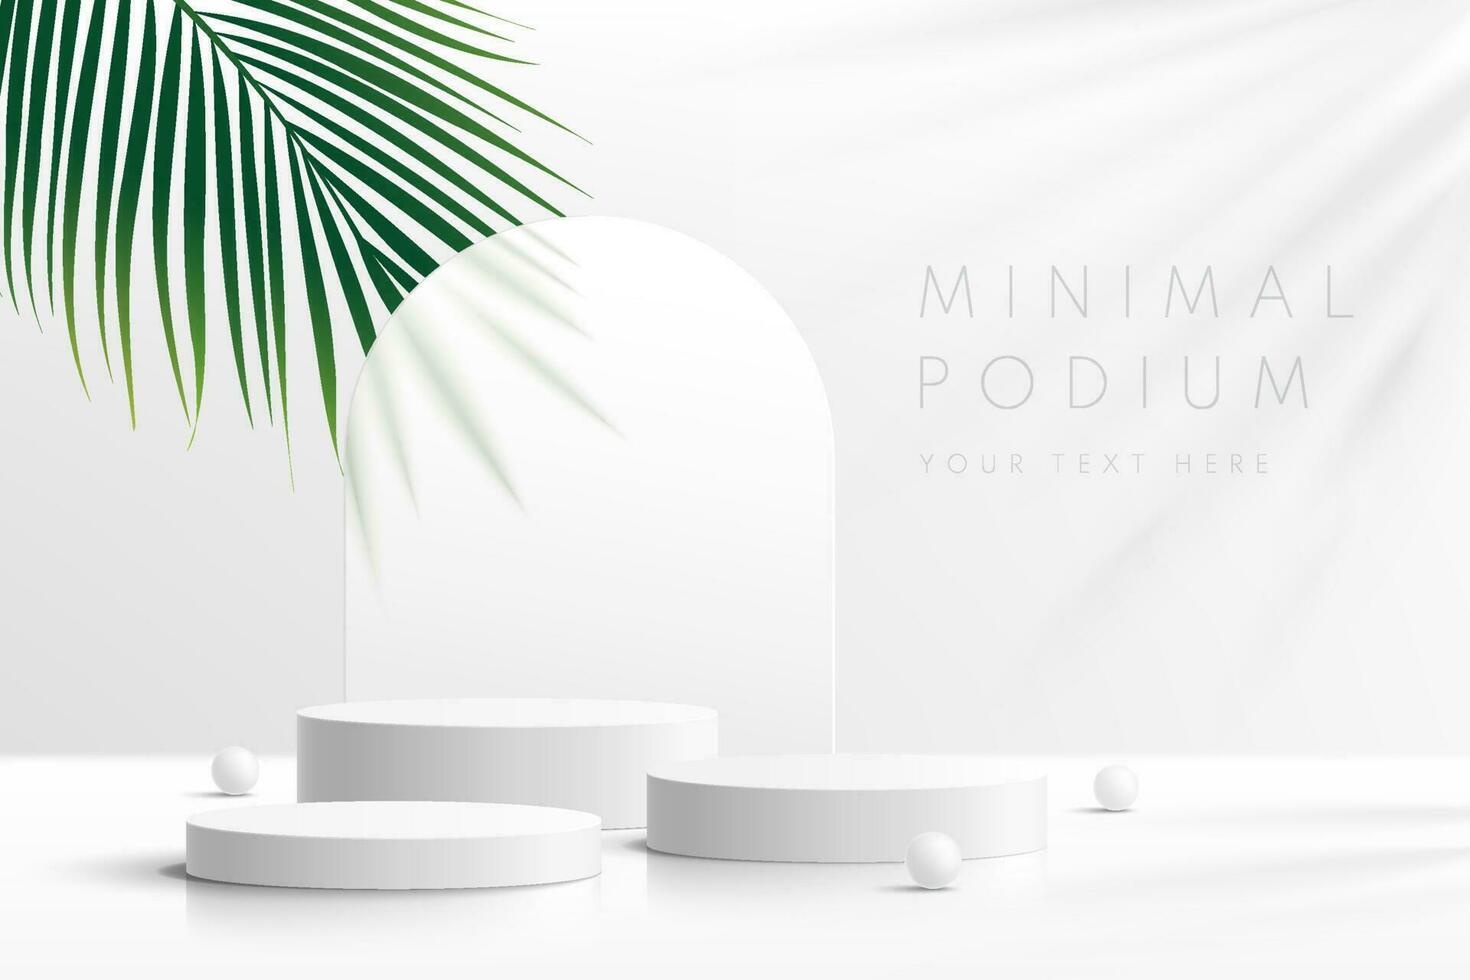 realistische witte 3d cilinder sokkel podium set met groen palmblad. minimale scène voor producten podium showcase, promotie display. vector geometrische vormen in de schaduw. abstract schoon studiokamerontwerp.